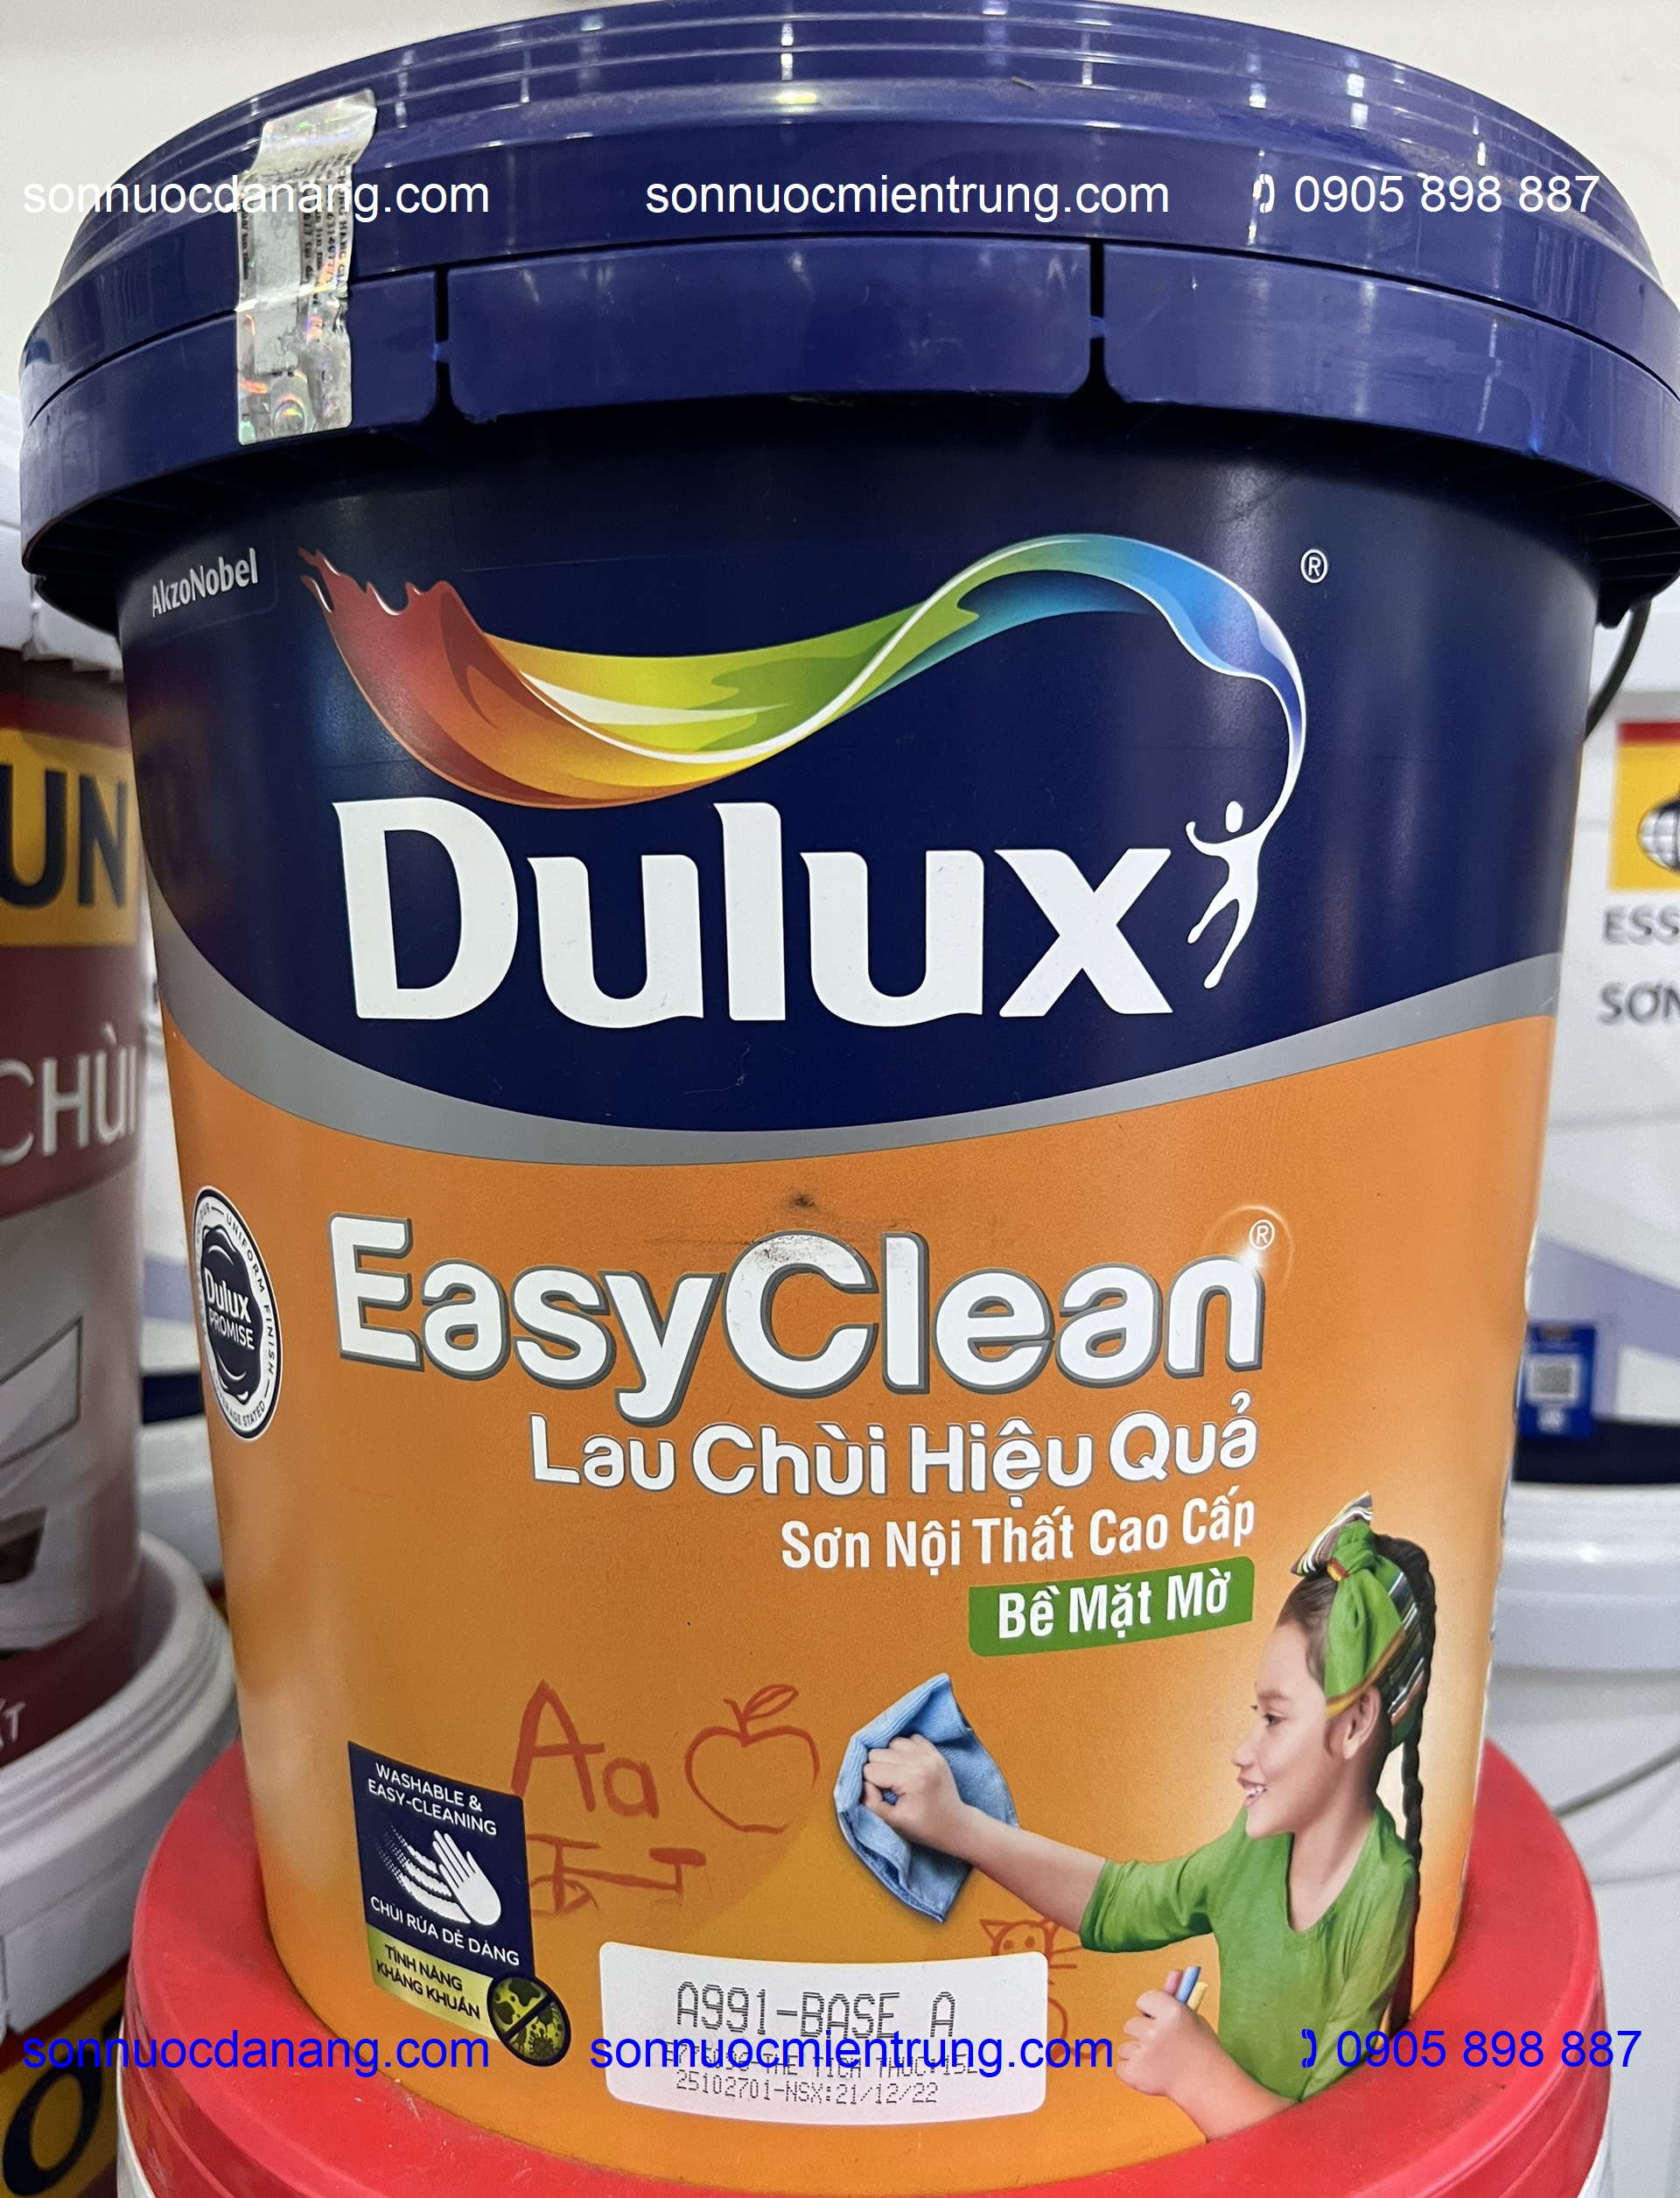 Sơn Dulux Easyclean lau chùi hiệu quả-A991 chính hãng tại Đà Nẵng, Hồ Chí Minh, Hà Nội và toàn quốc là loại sơn nội thất cao cấp, giải pháp giúp tường nhà bạn luôn tươi mới, sạch sáng nhờ công nghệ ProtectMask tiên tiến ngăn vết bẩn thấm sâu vào màng sơn khiến chúng dễ dàng bị đánh bật chỉ với chiếc khăn ướt hoặc xà phòng mà không hề làm tổn hại màng sơn. Khả năng chịu được chùi rửa của Dulux Easy Clean gấp 10 lần khi so với sơn thông thường giúp giữ cho tường nhà luôn sạch đẹp như mới.